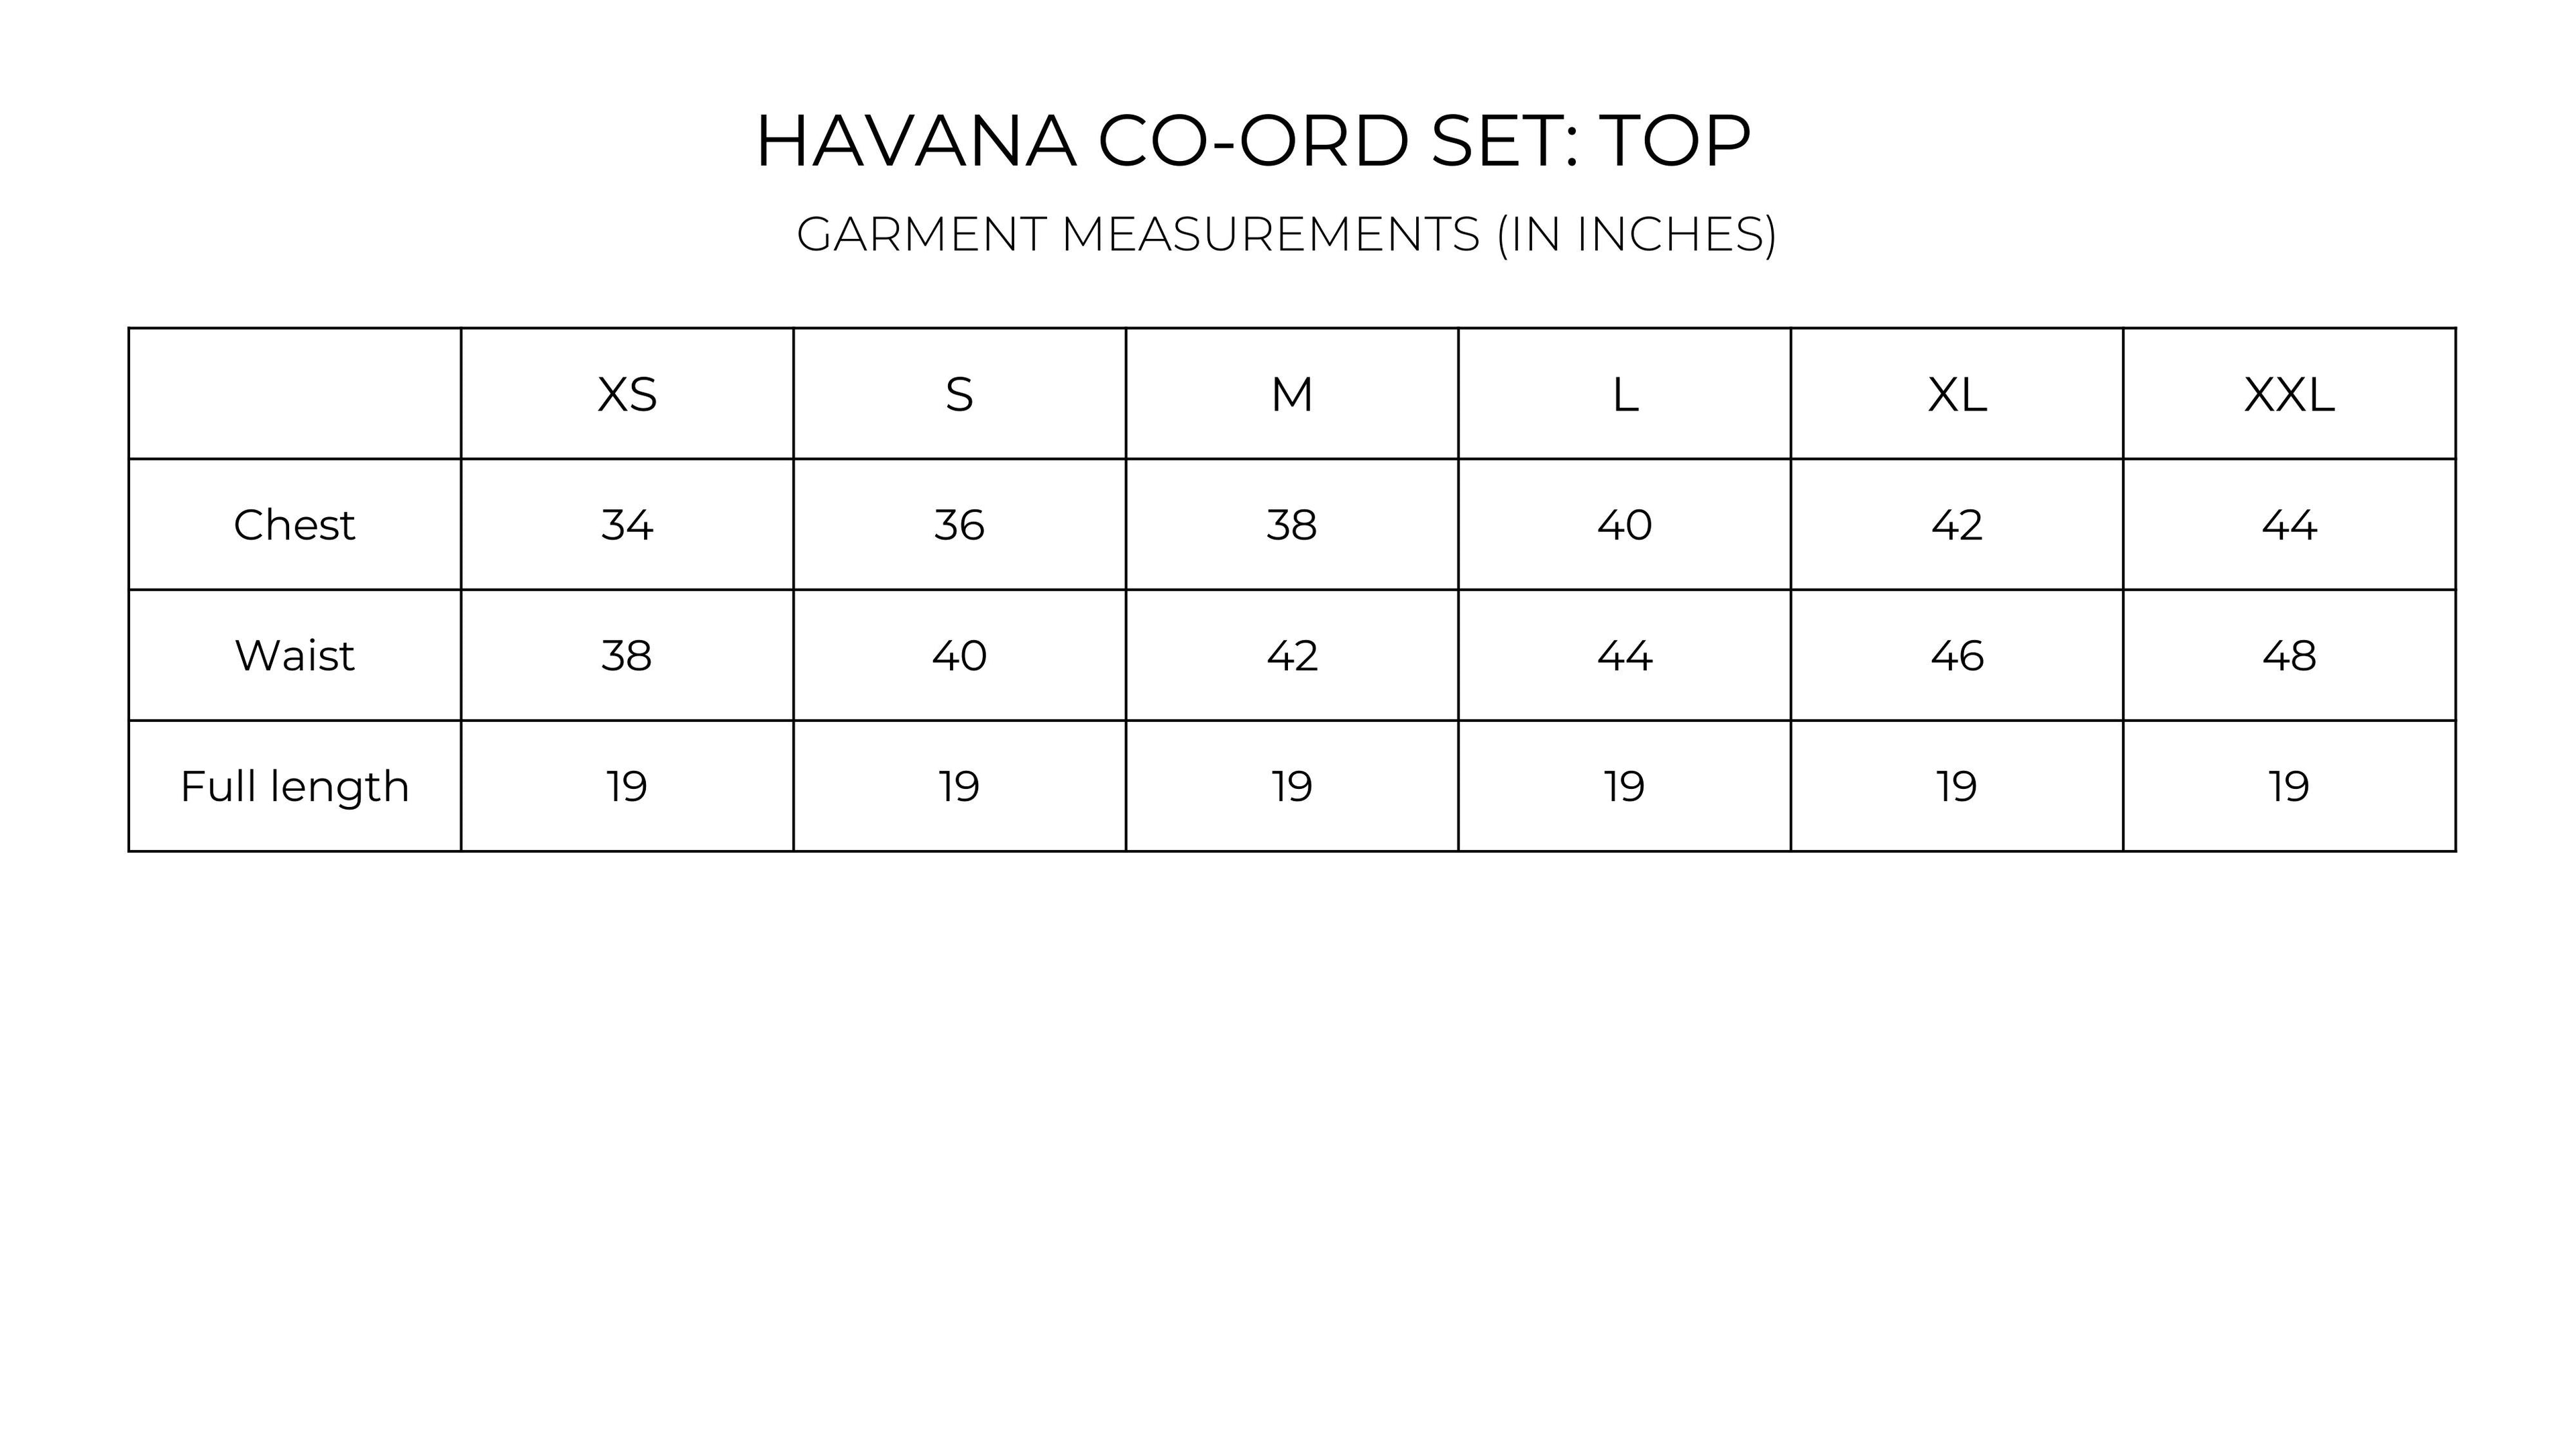 Havana Co-ord Set